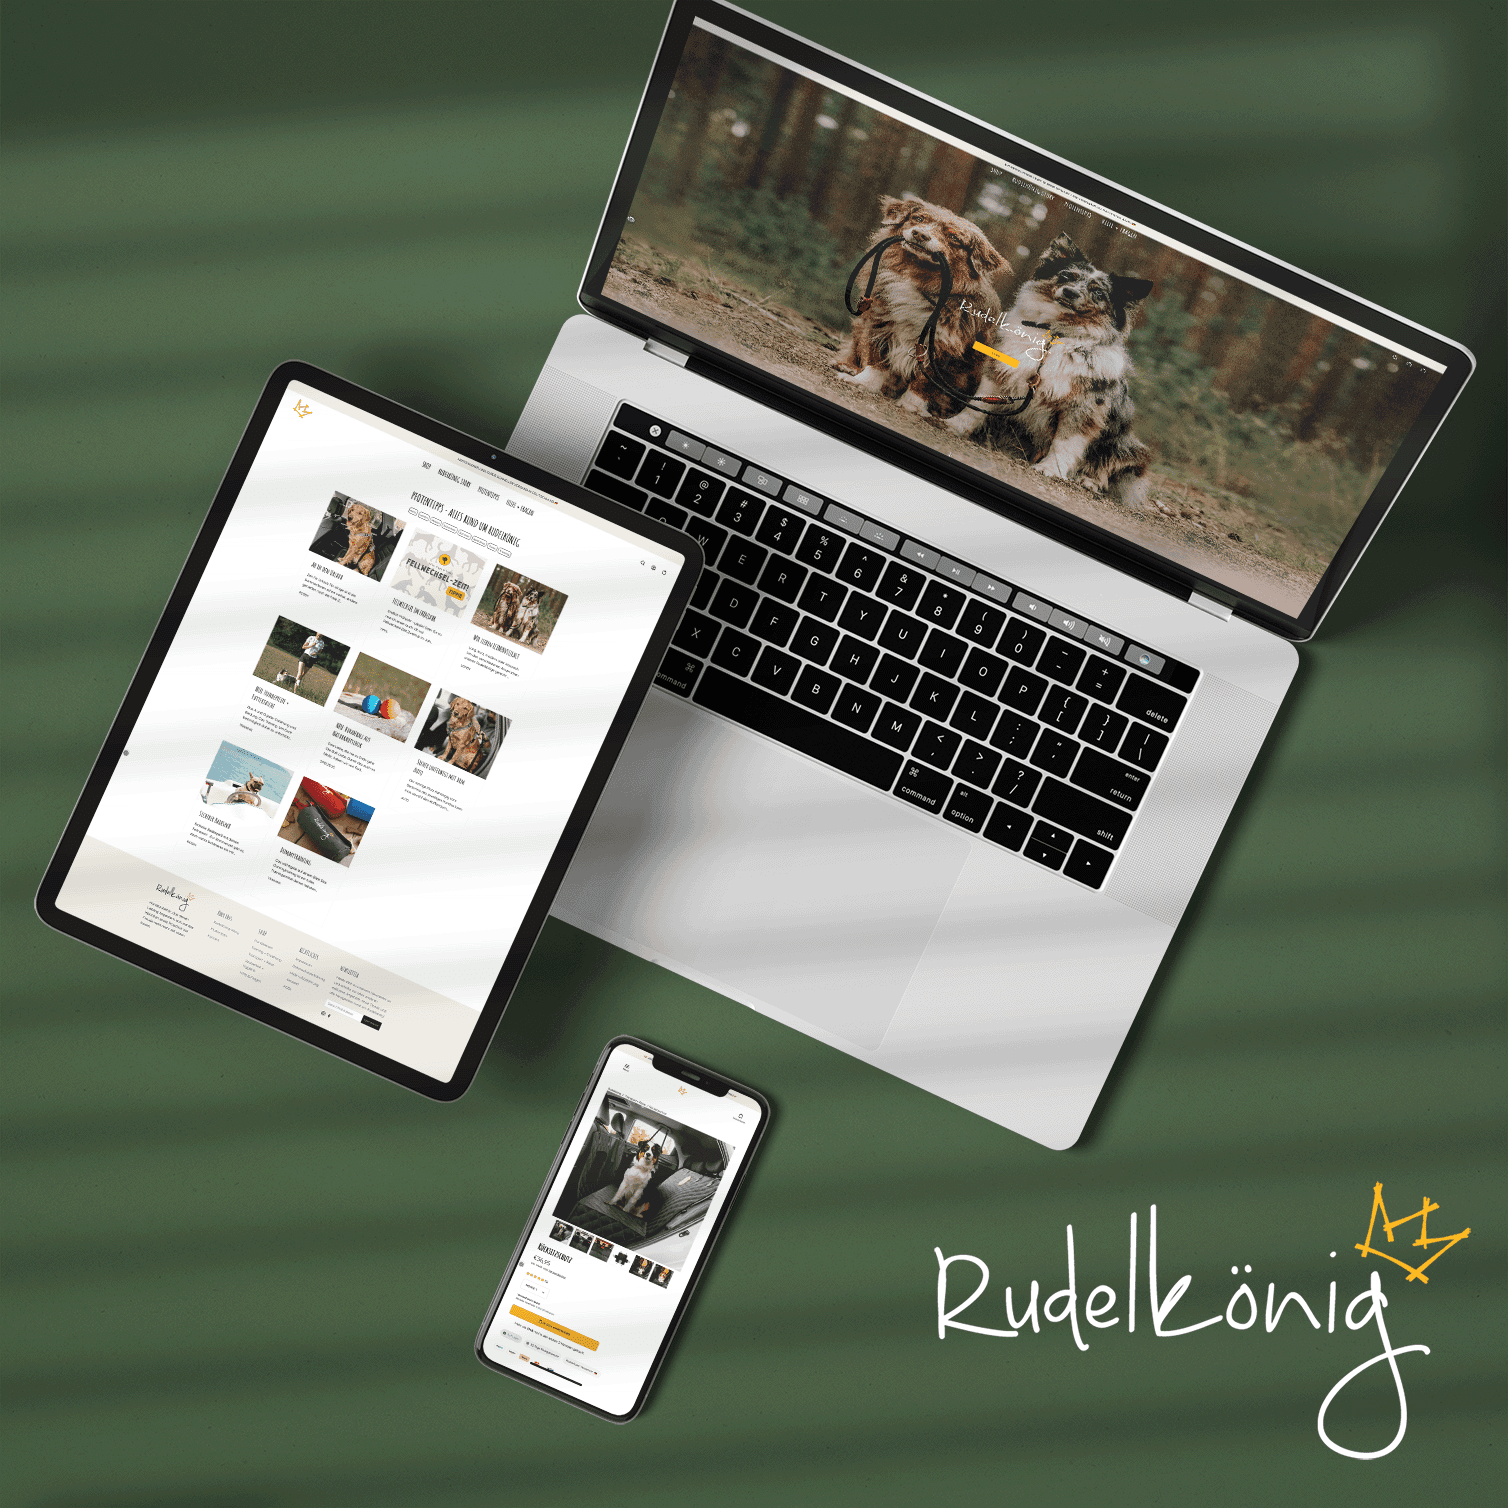 Darstellung Rudelkönig Onlineshop auf iPhone, iPad und Macbook.